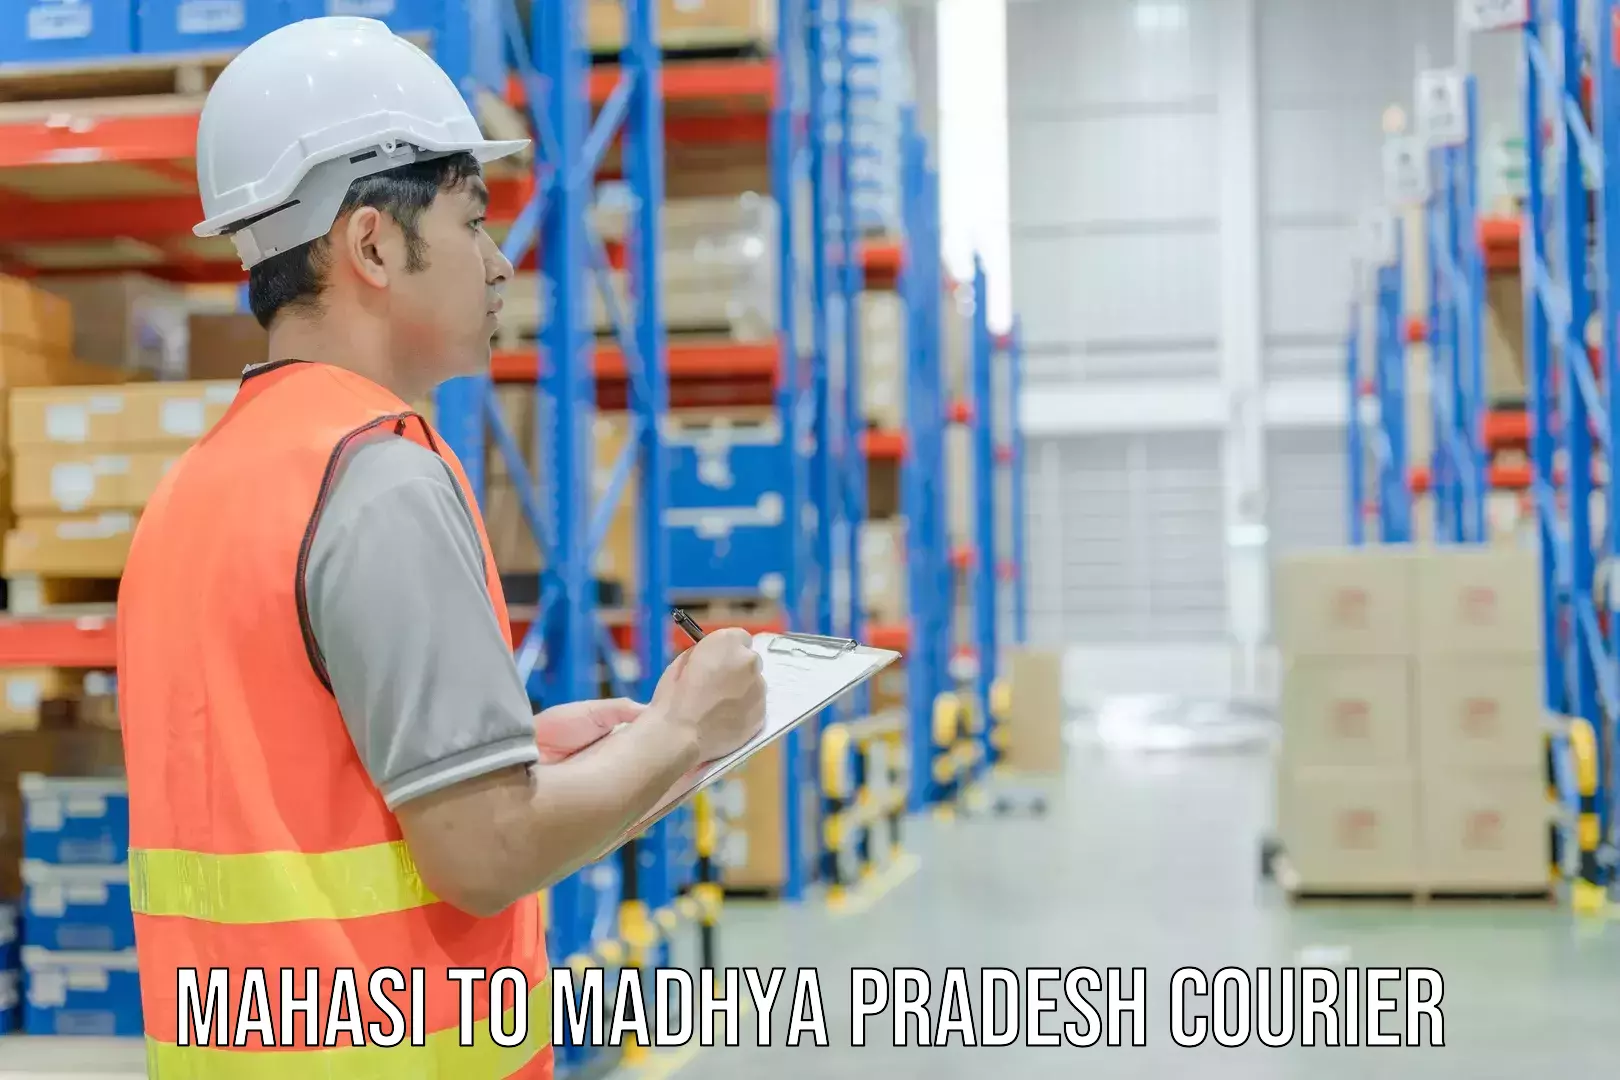 Nationwide courier service Mahasi to Madhya Pradesh